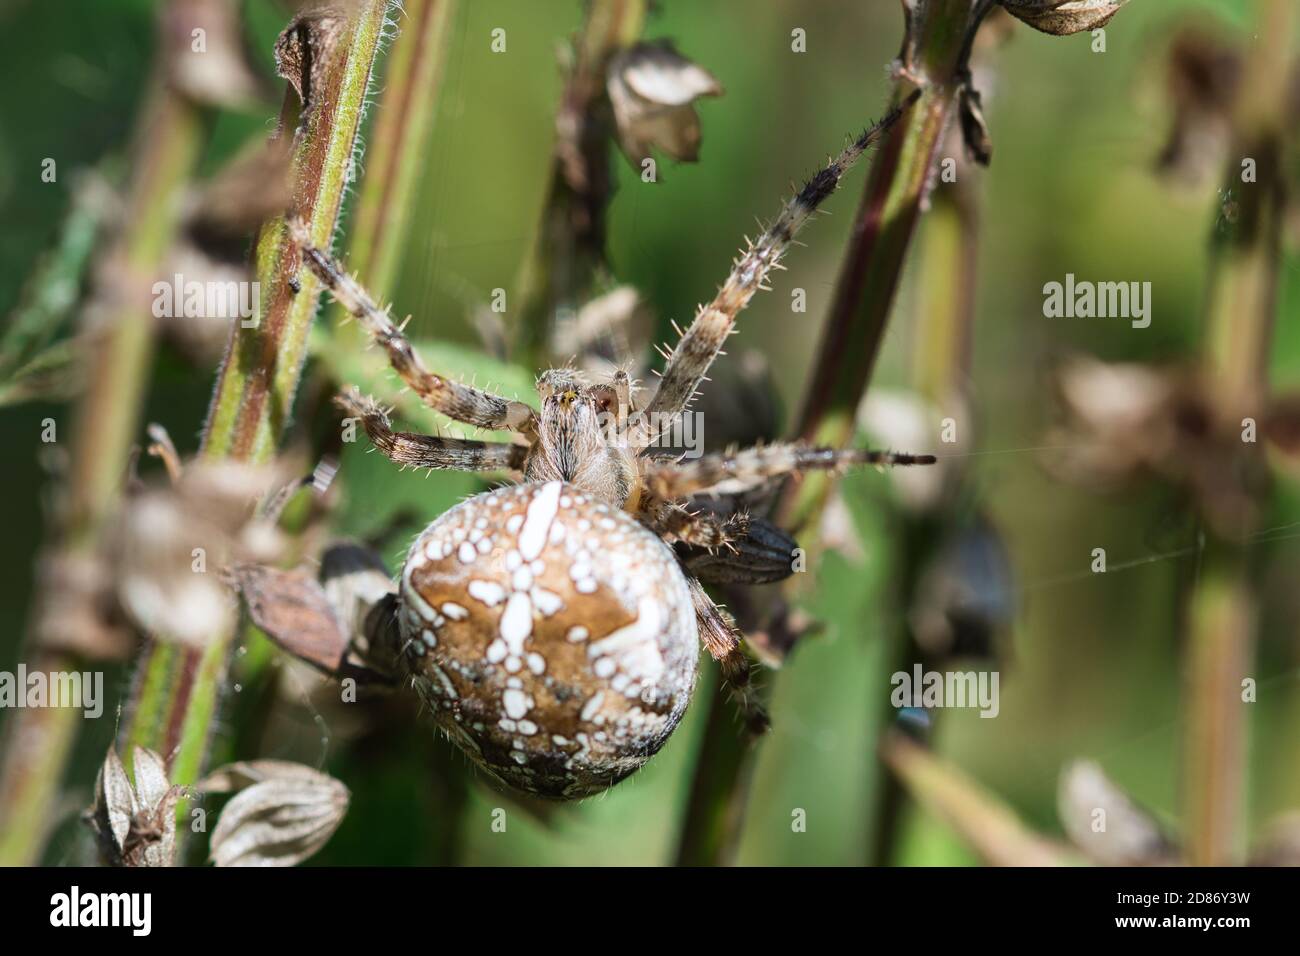 Coronado orbe tejedor, jardín cruz araña macro textura, vista superior, insecto en la web esperando una presa, detallado, con textura de fondo borroso Foto de stock